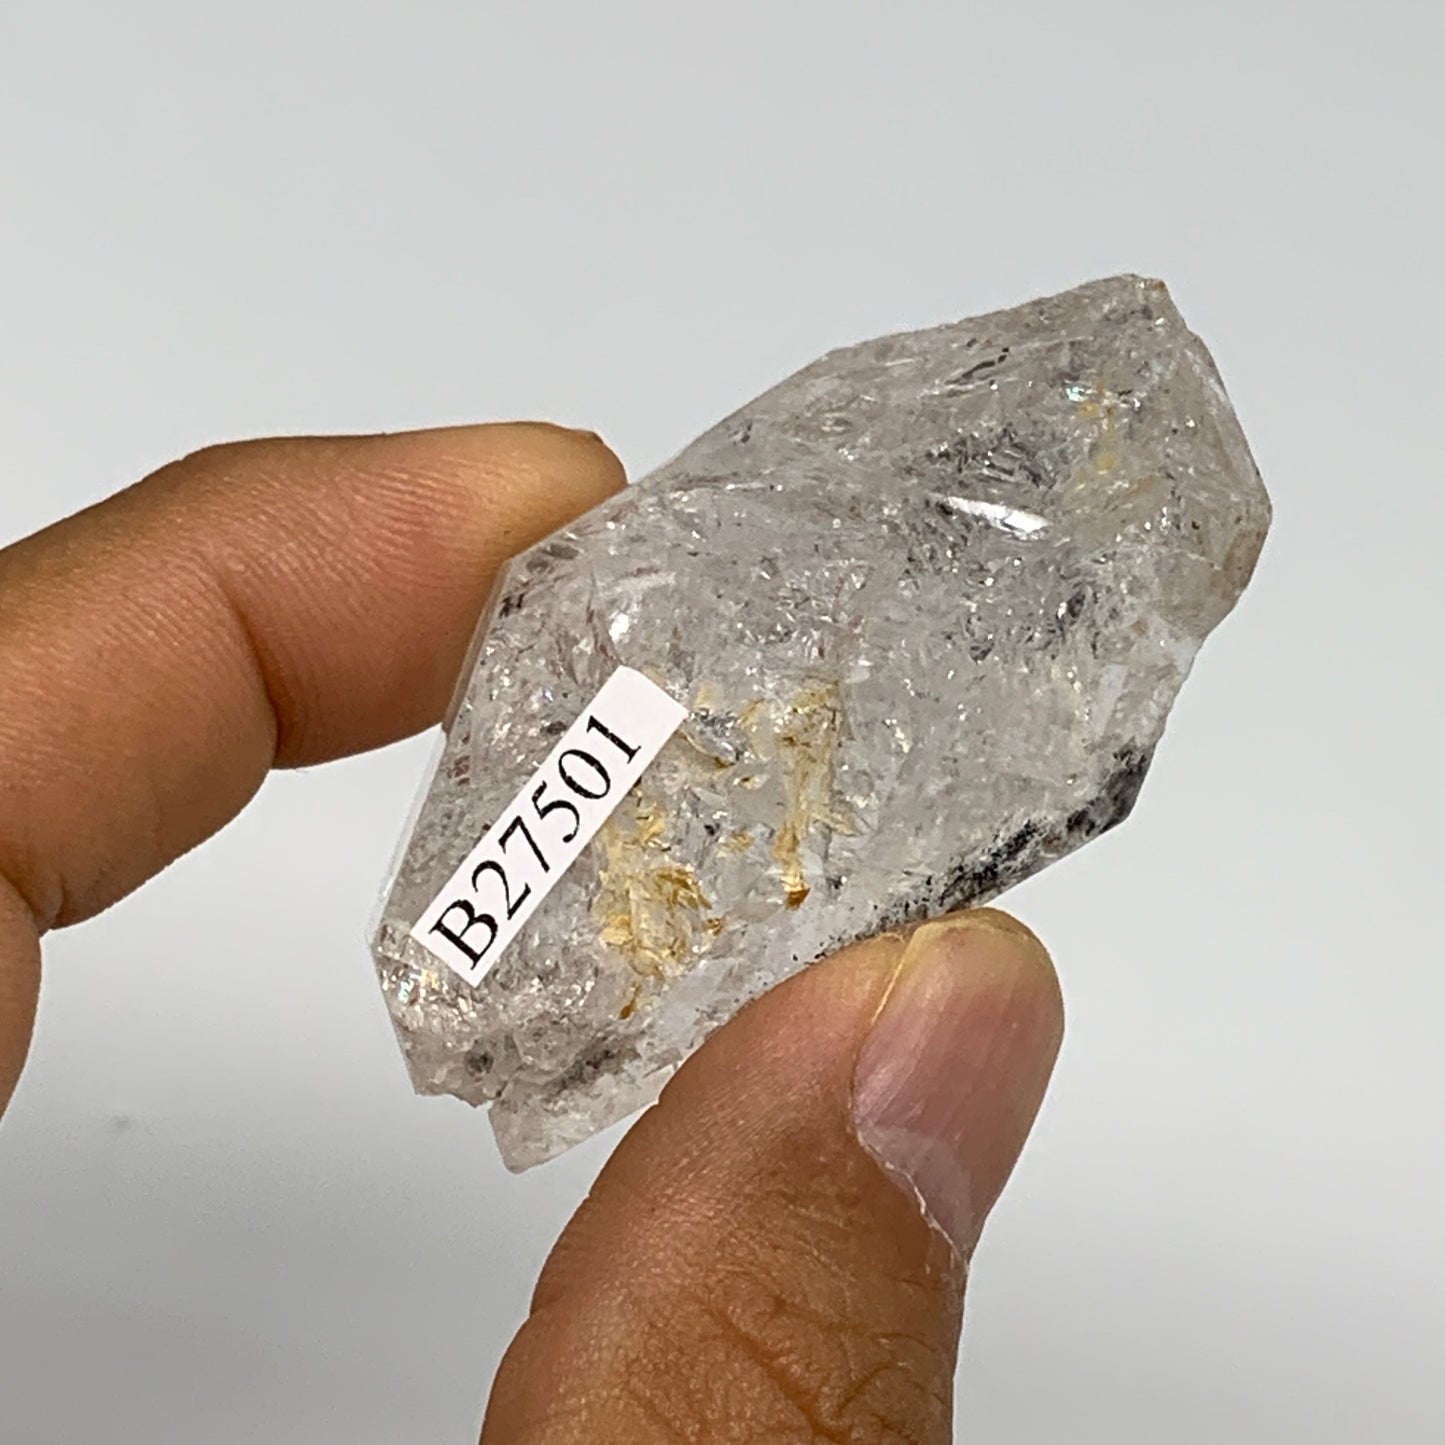 43.7g, 2"x1.2"x0.9", Natural Window Quartz Crystal Terminated @Pakistan,B27501